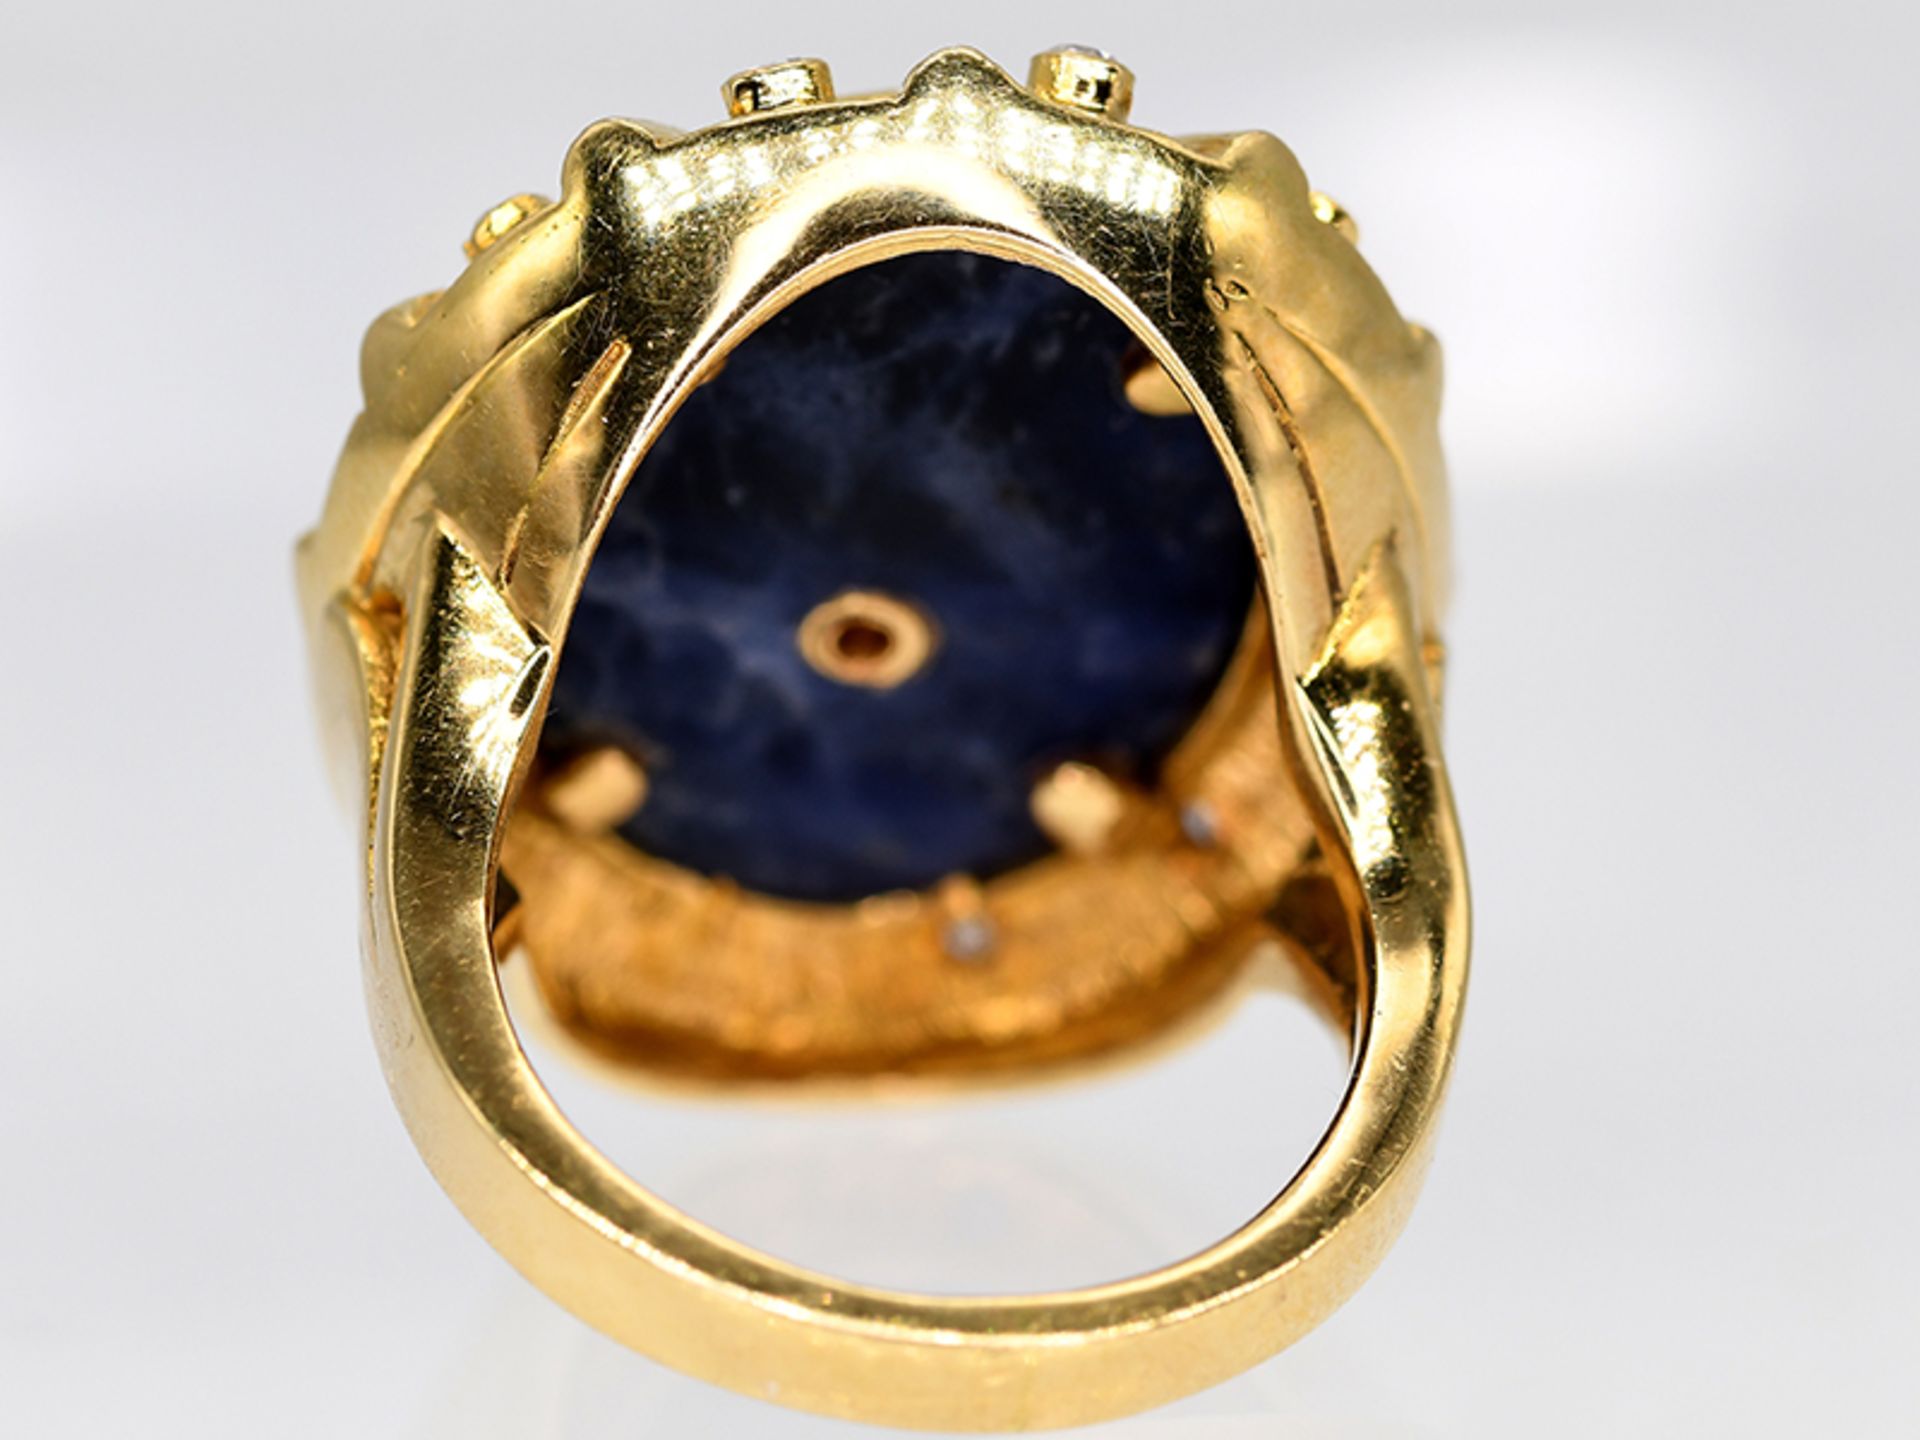 Massiver Ring mit Lapislazuli und 12 Achtkant-Diamanten, zus. ca. 0,1 ct, griechische Goldschmiedear - Image 5 of 5